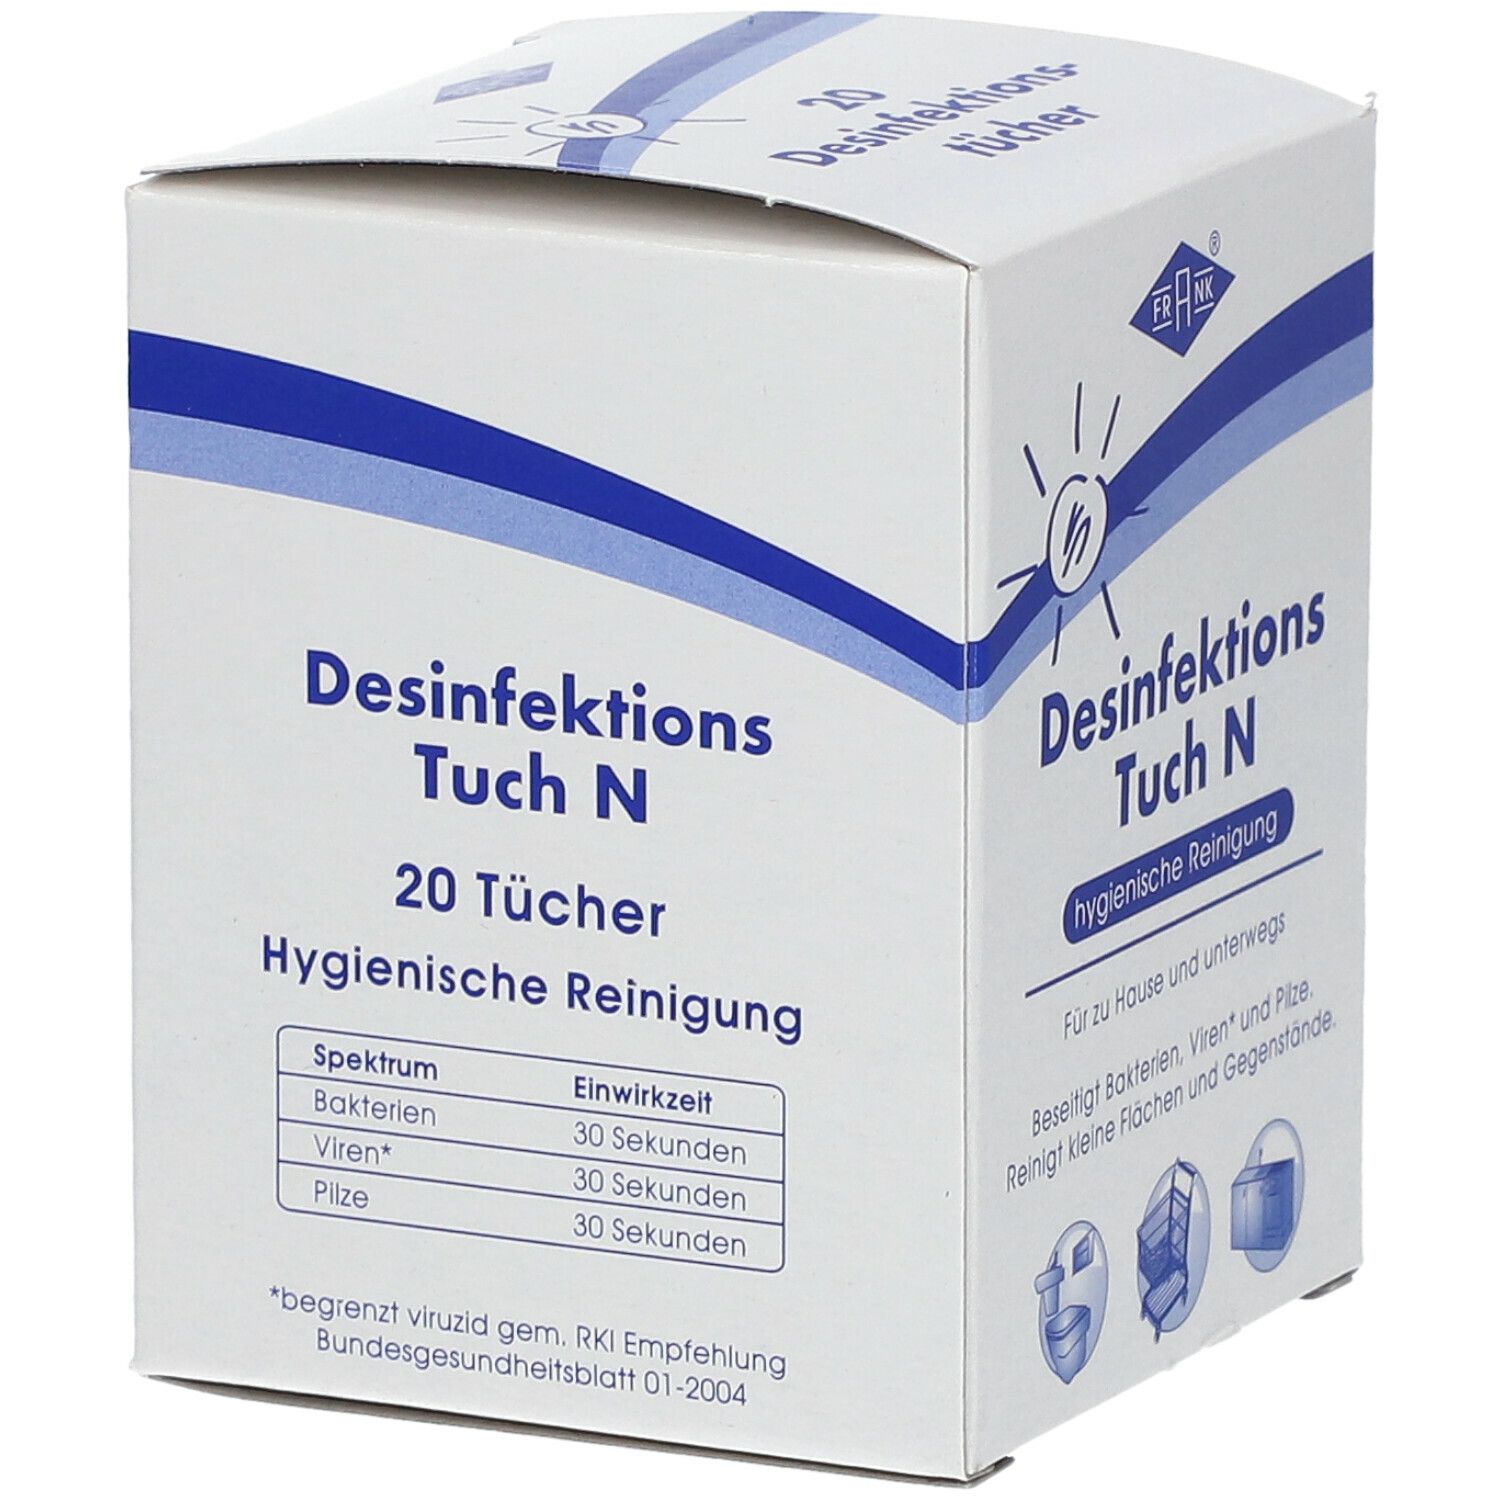 FRANK® Desinfektions Tuch N